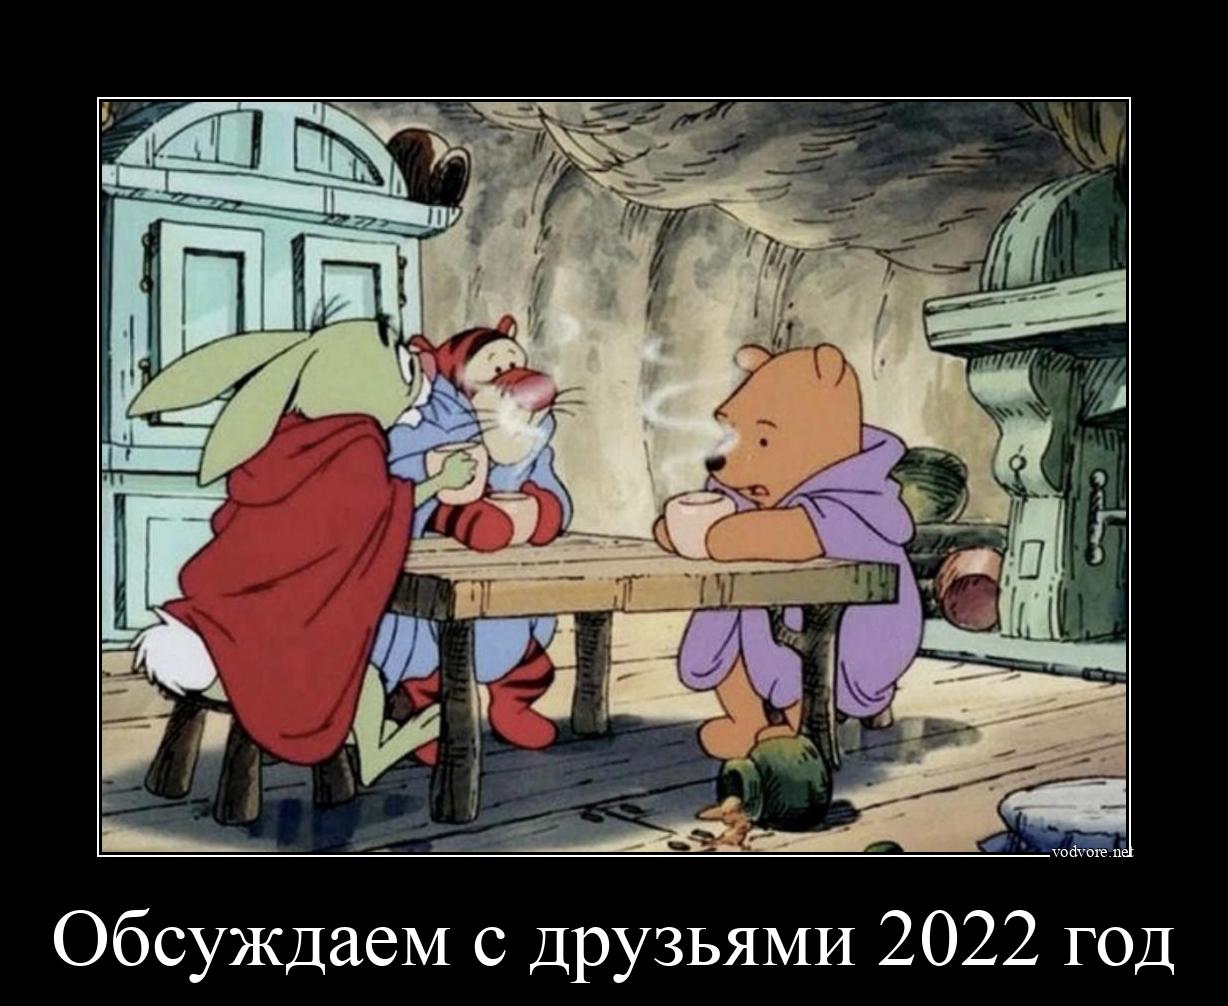 Демотиватор: Обсуждаем с друзьями 2022 год 